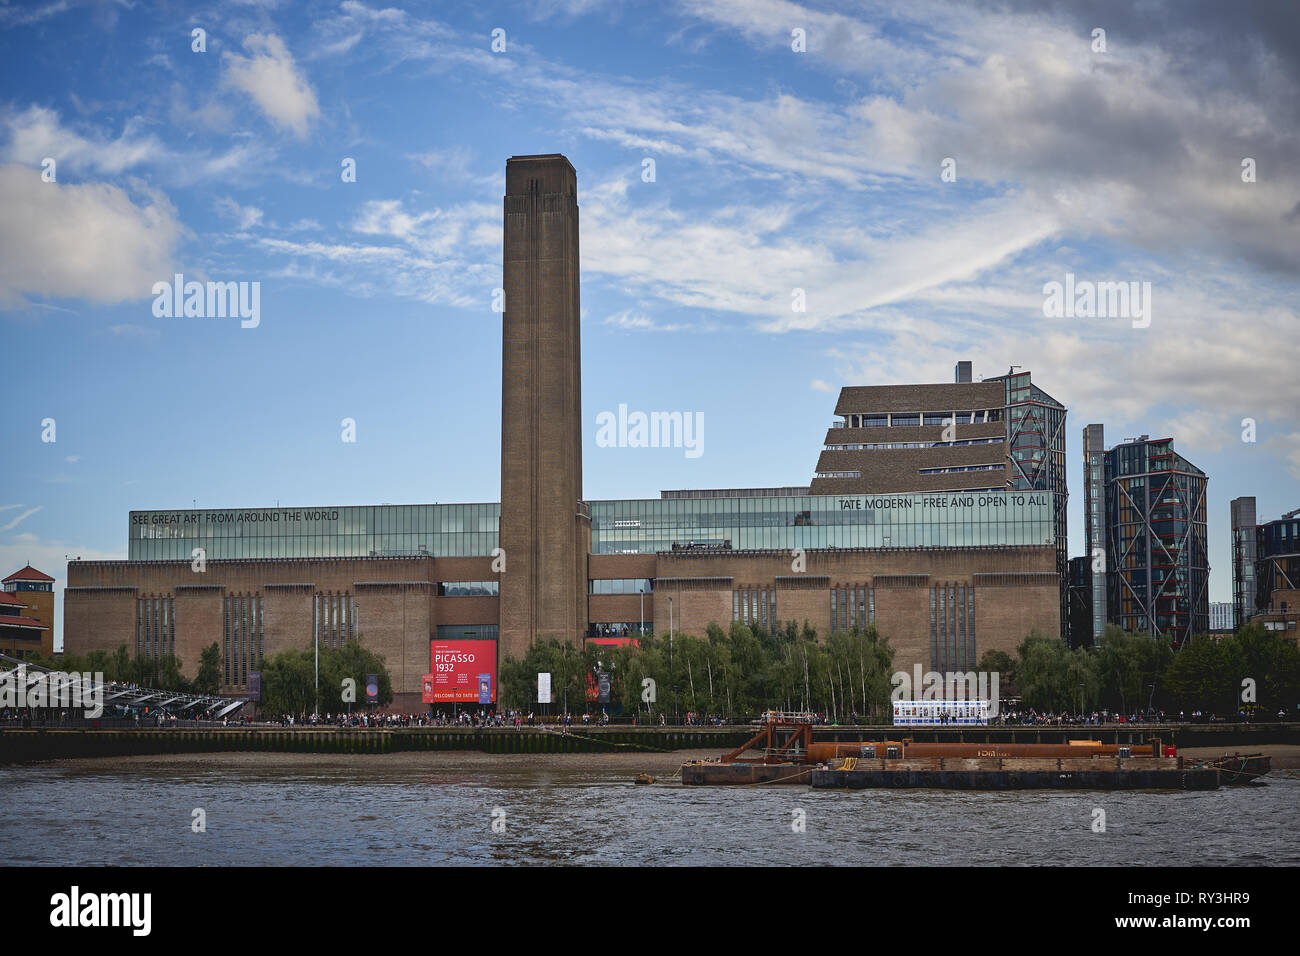 Londres, Royaume-Uni - Octobre 2018. Le musée Tate Modern sur la rive sud de la Tamise. Banque D'Images